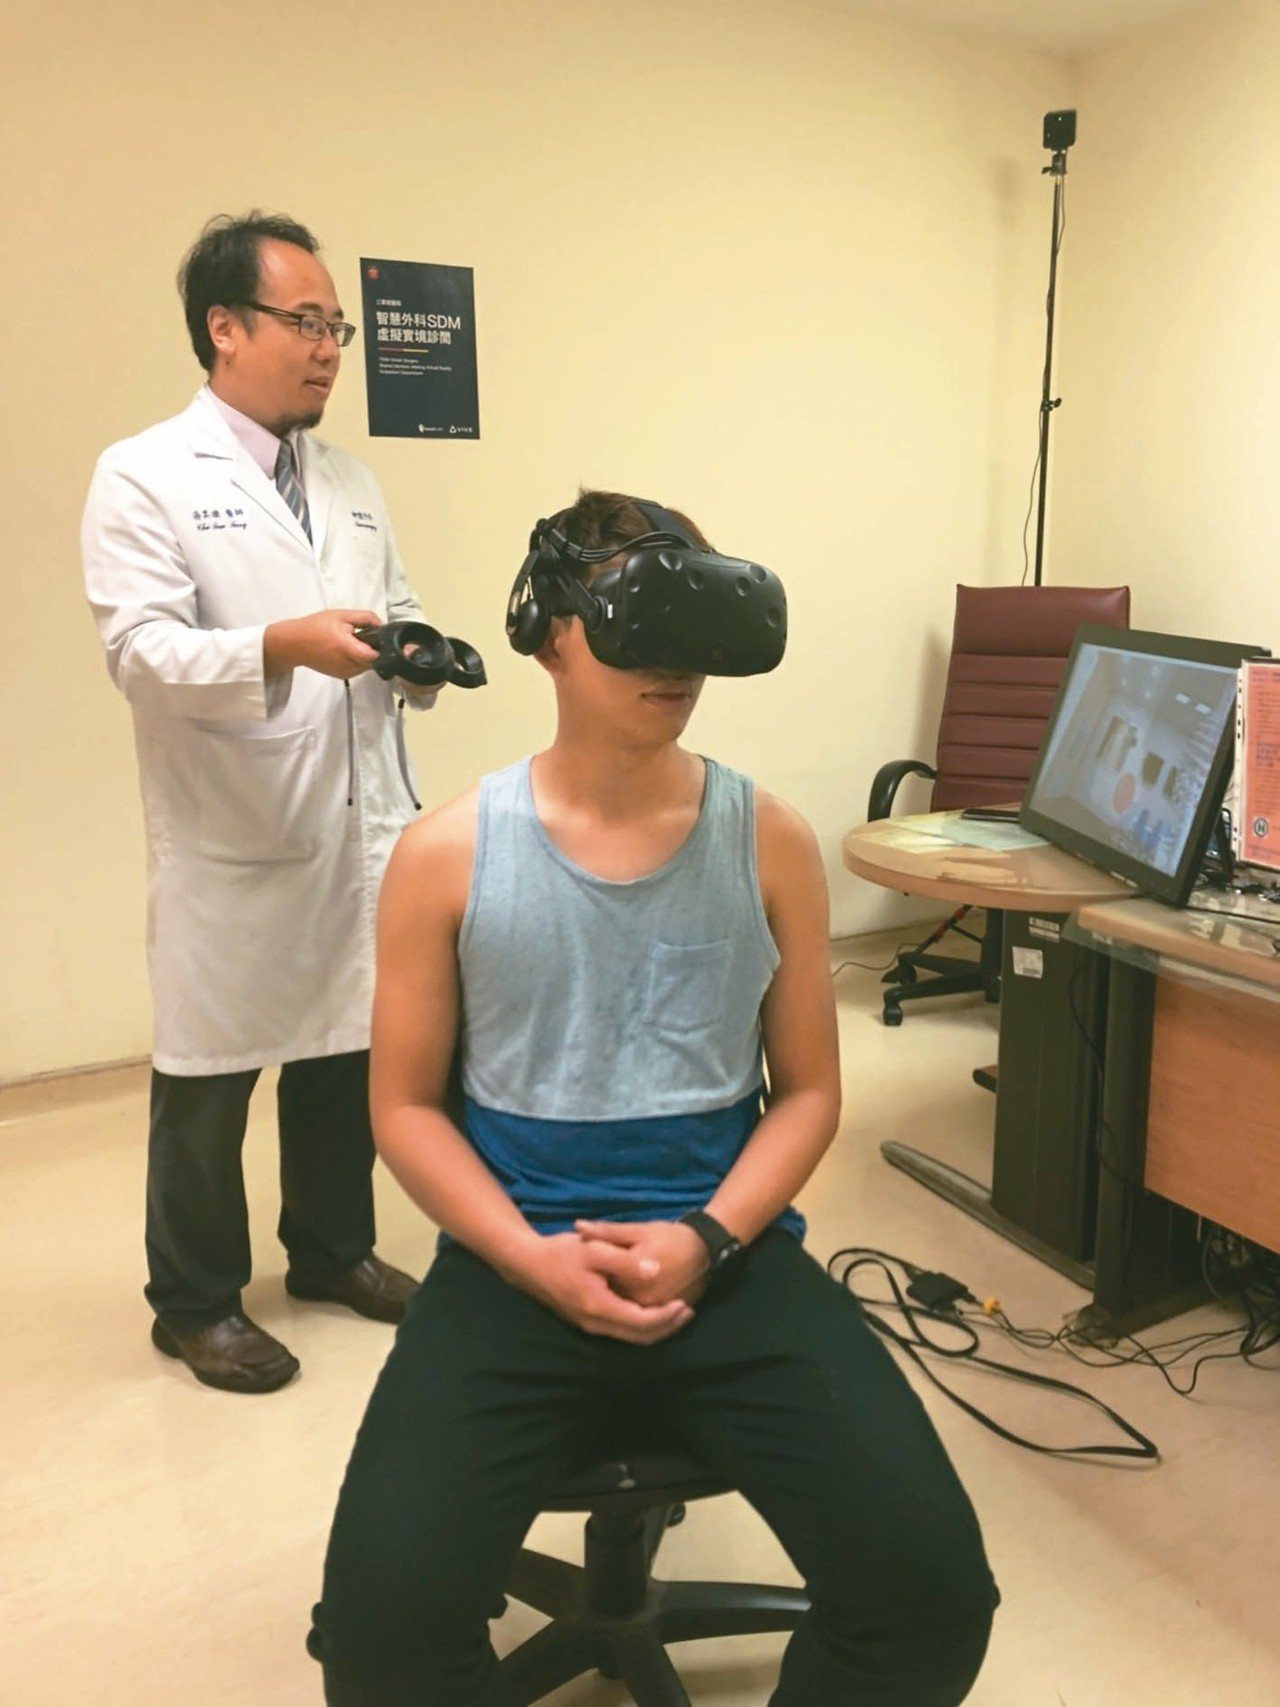 醫師在虛擬實境診間(VR)解說病灶位置及發生症狀，透過VR虛擬實境，可突破溝通困難，讓病人清楚明瞭手術部位空間結構上的關係。